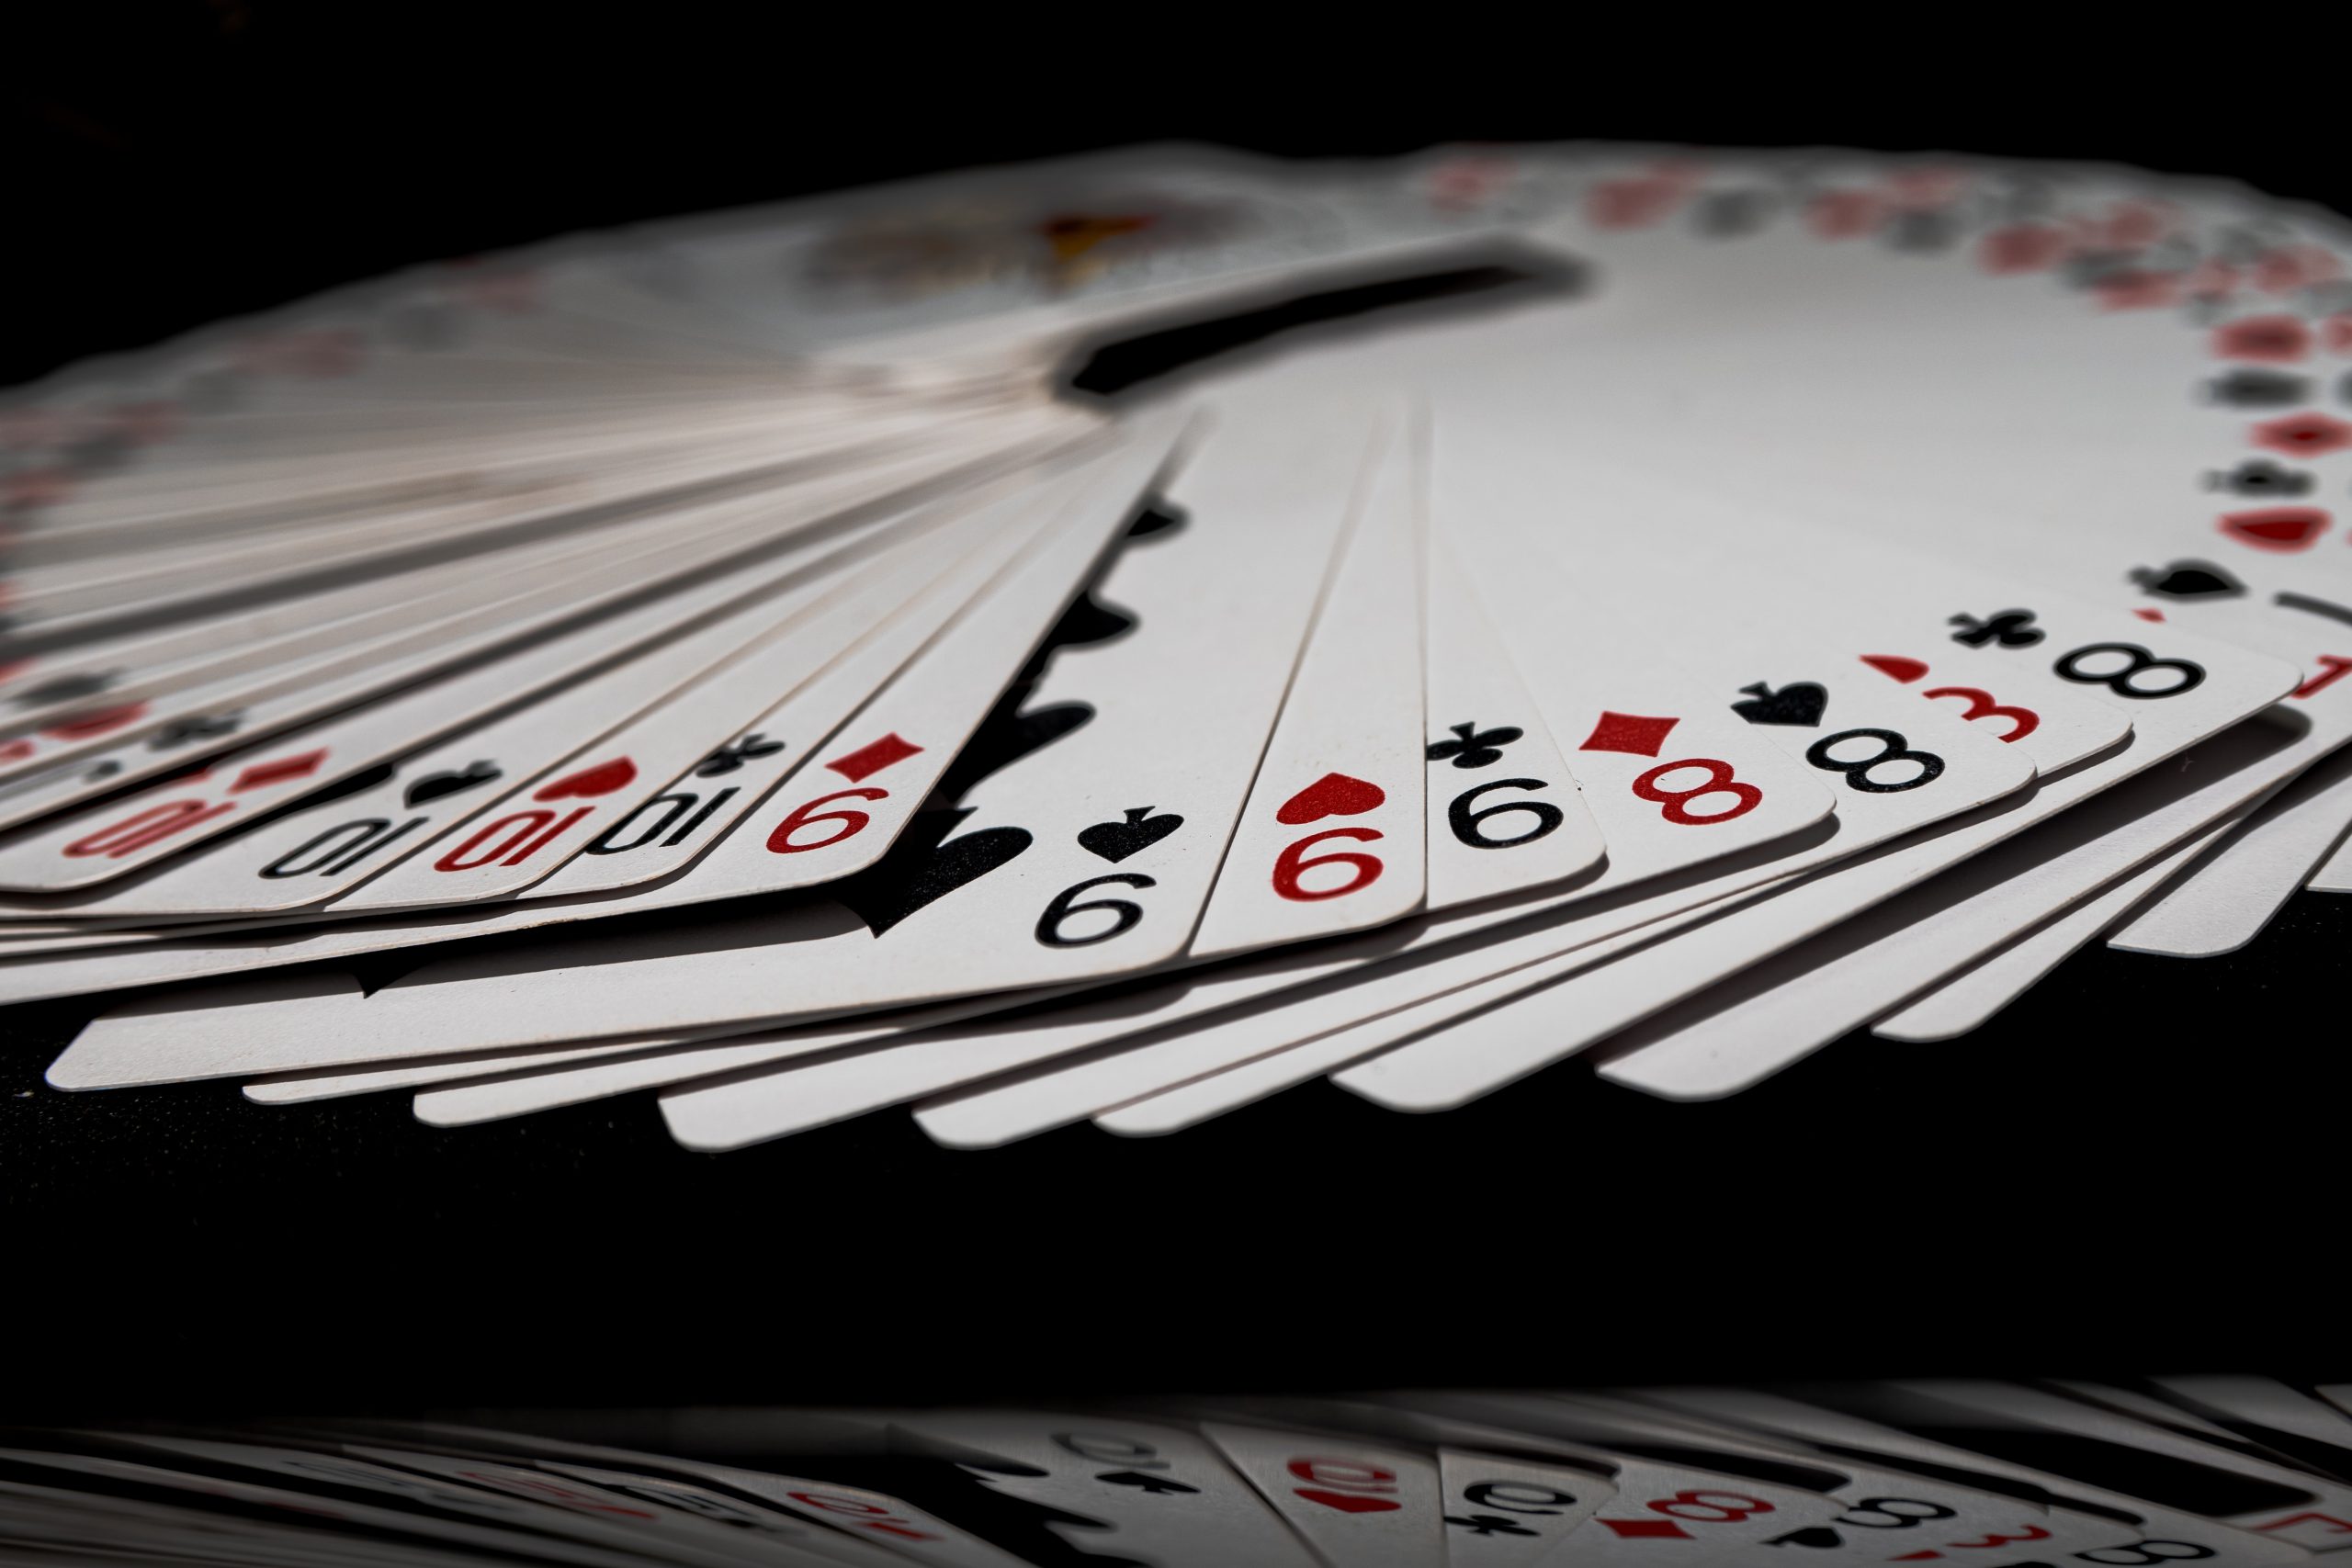 ¿”Flat call” en el póquer?